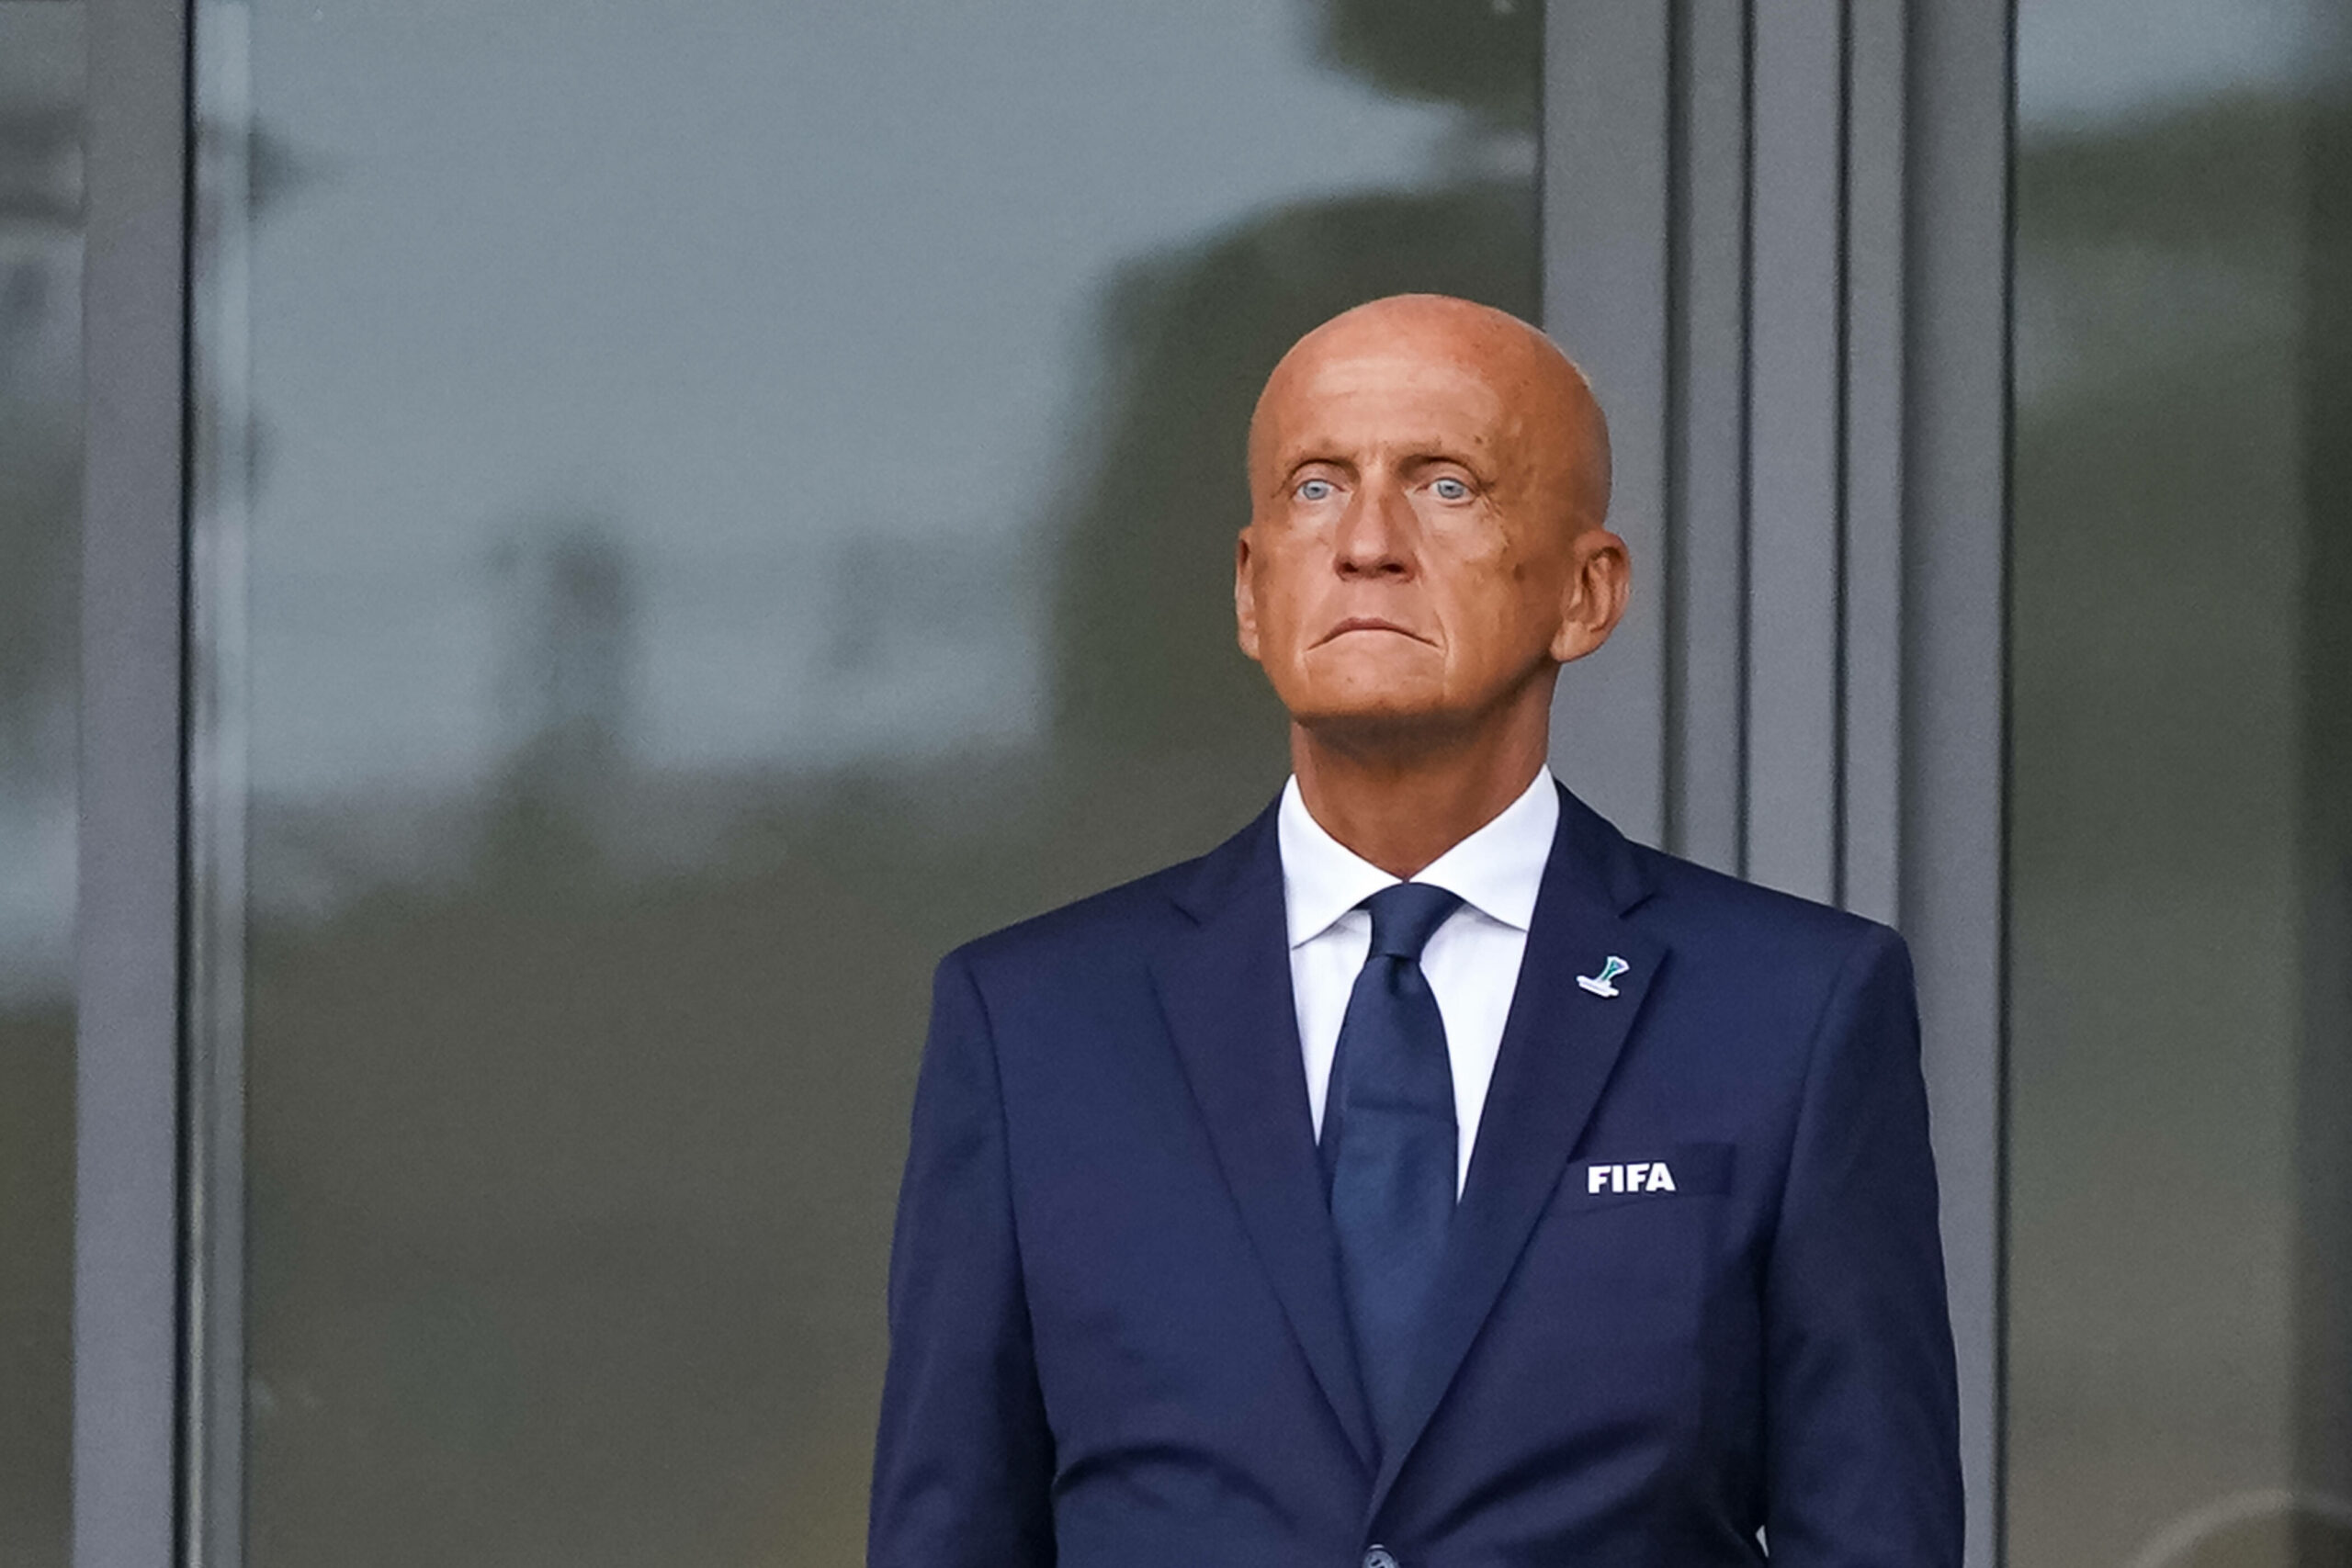 Pierluigi Collina im Anzug der FIFA.